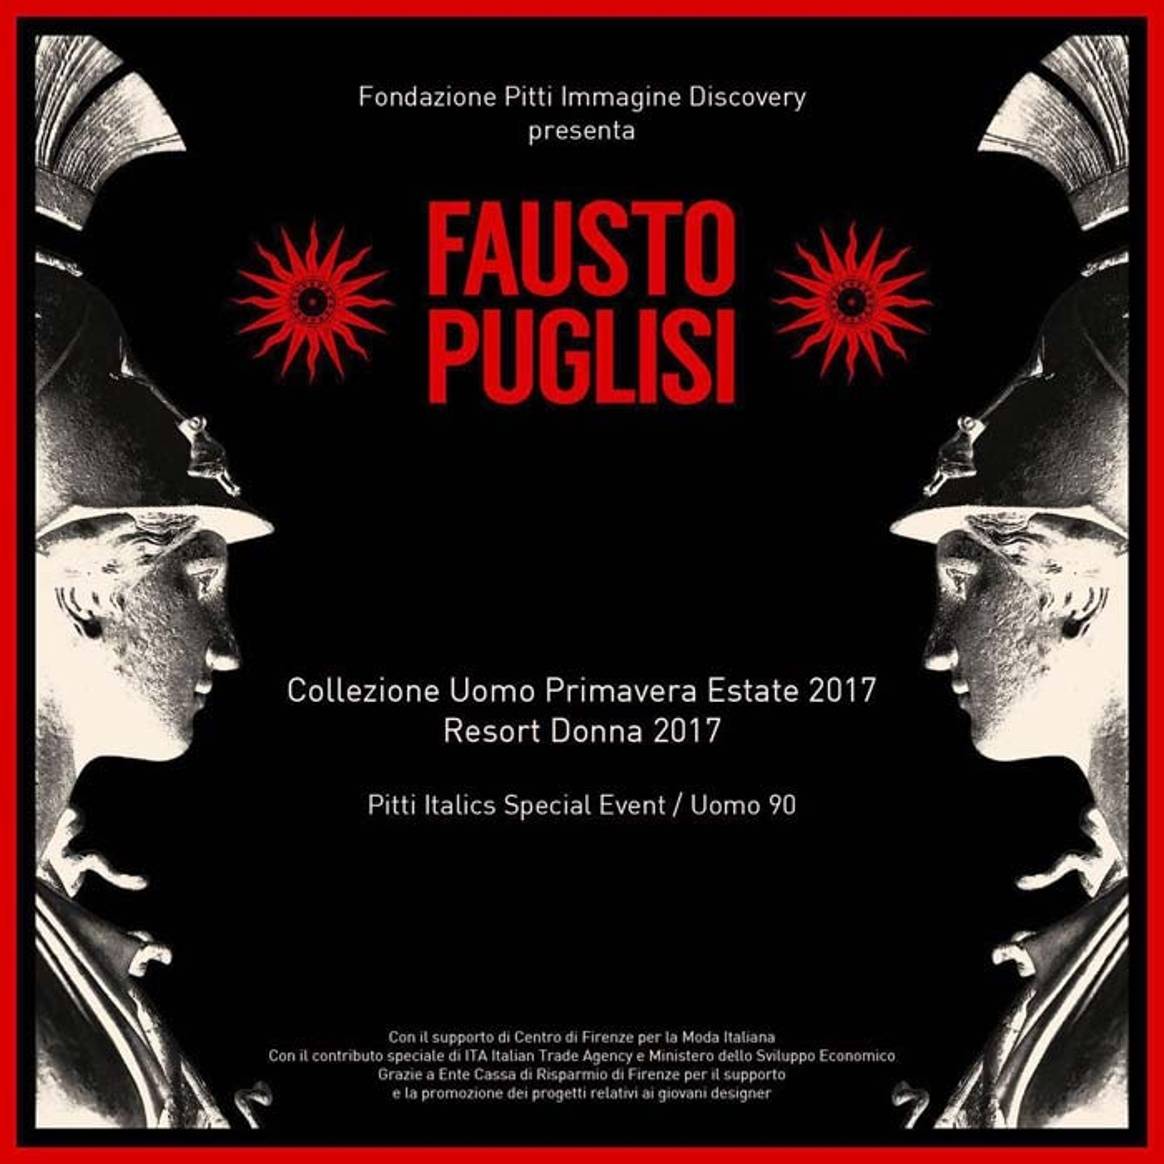 Fausto Puglisi debuts at Pitti Uomo 90